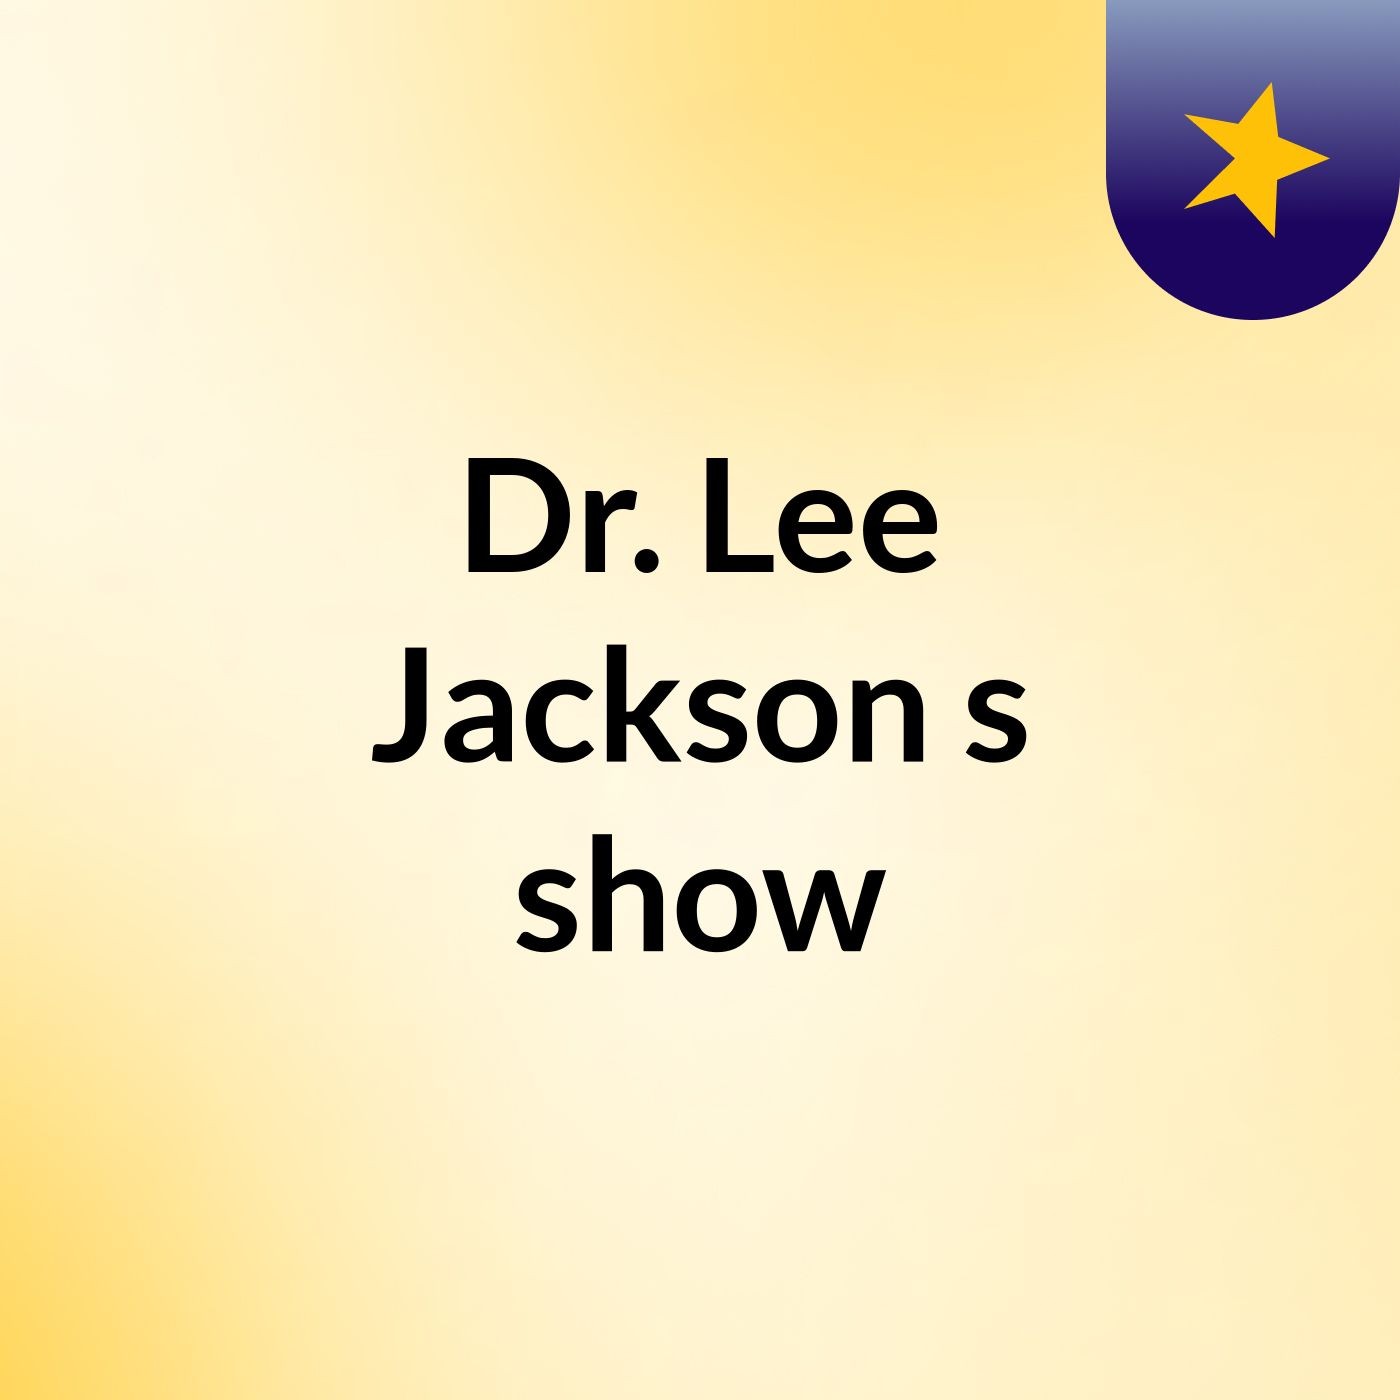 Dr. Lee Jackson's show